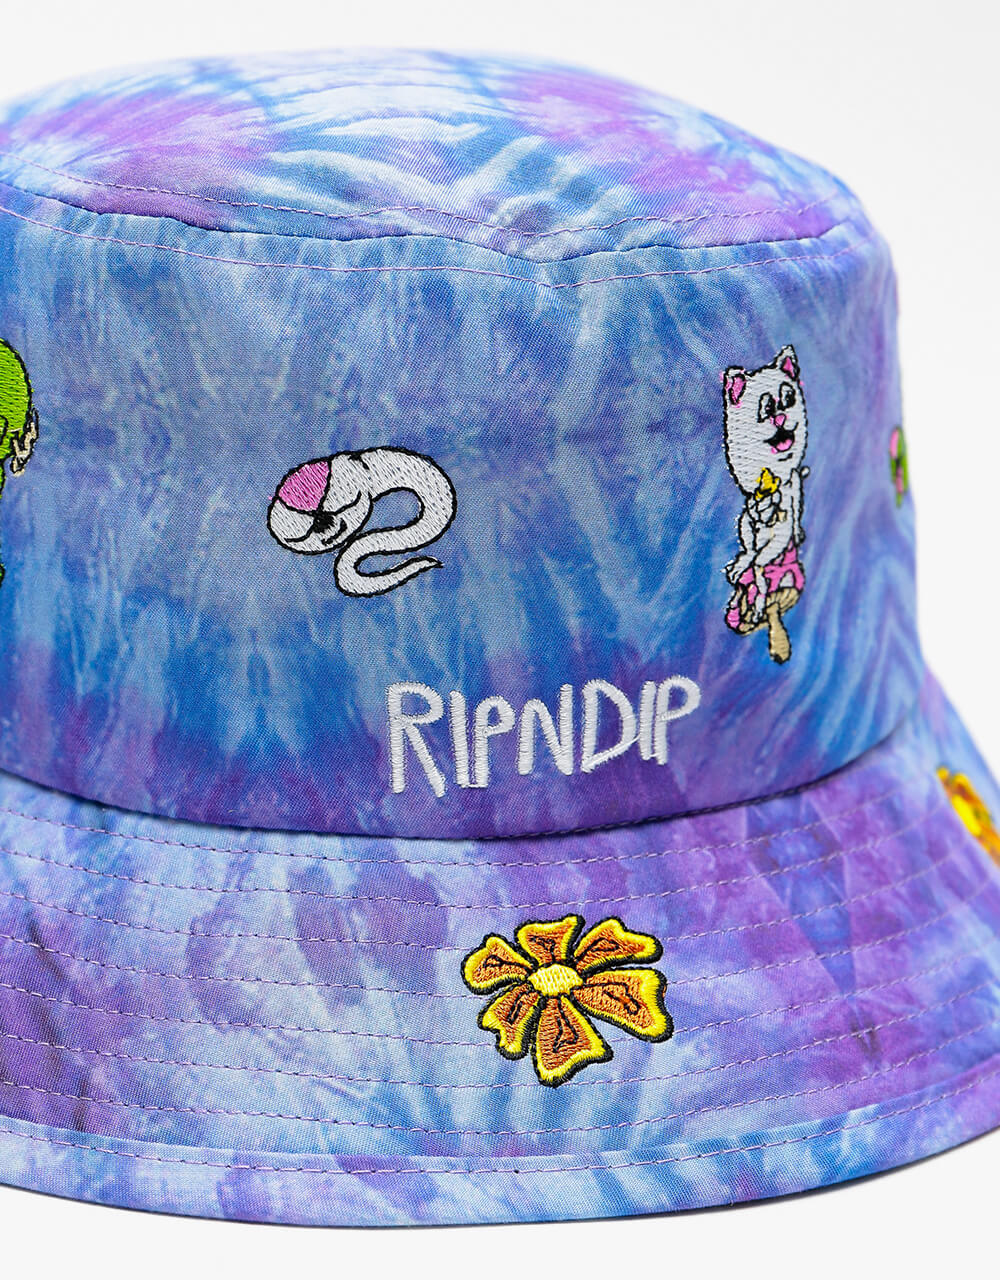 RIPNDIP Friday Jr Tie-Dye Bucket Hat - Purple Spiral Tie-Dye